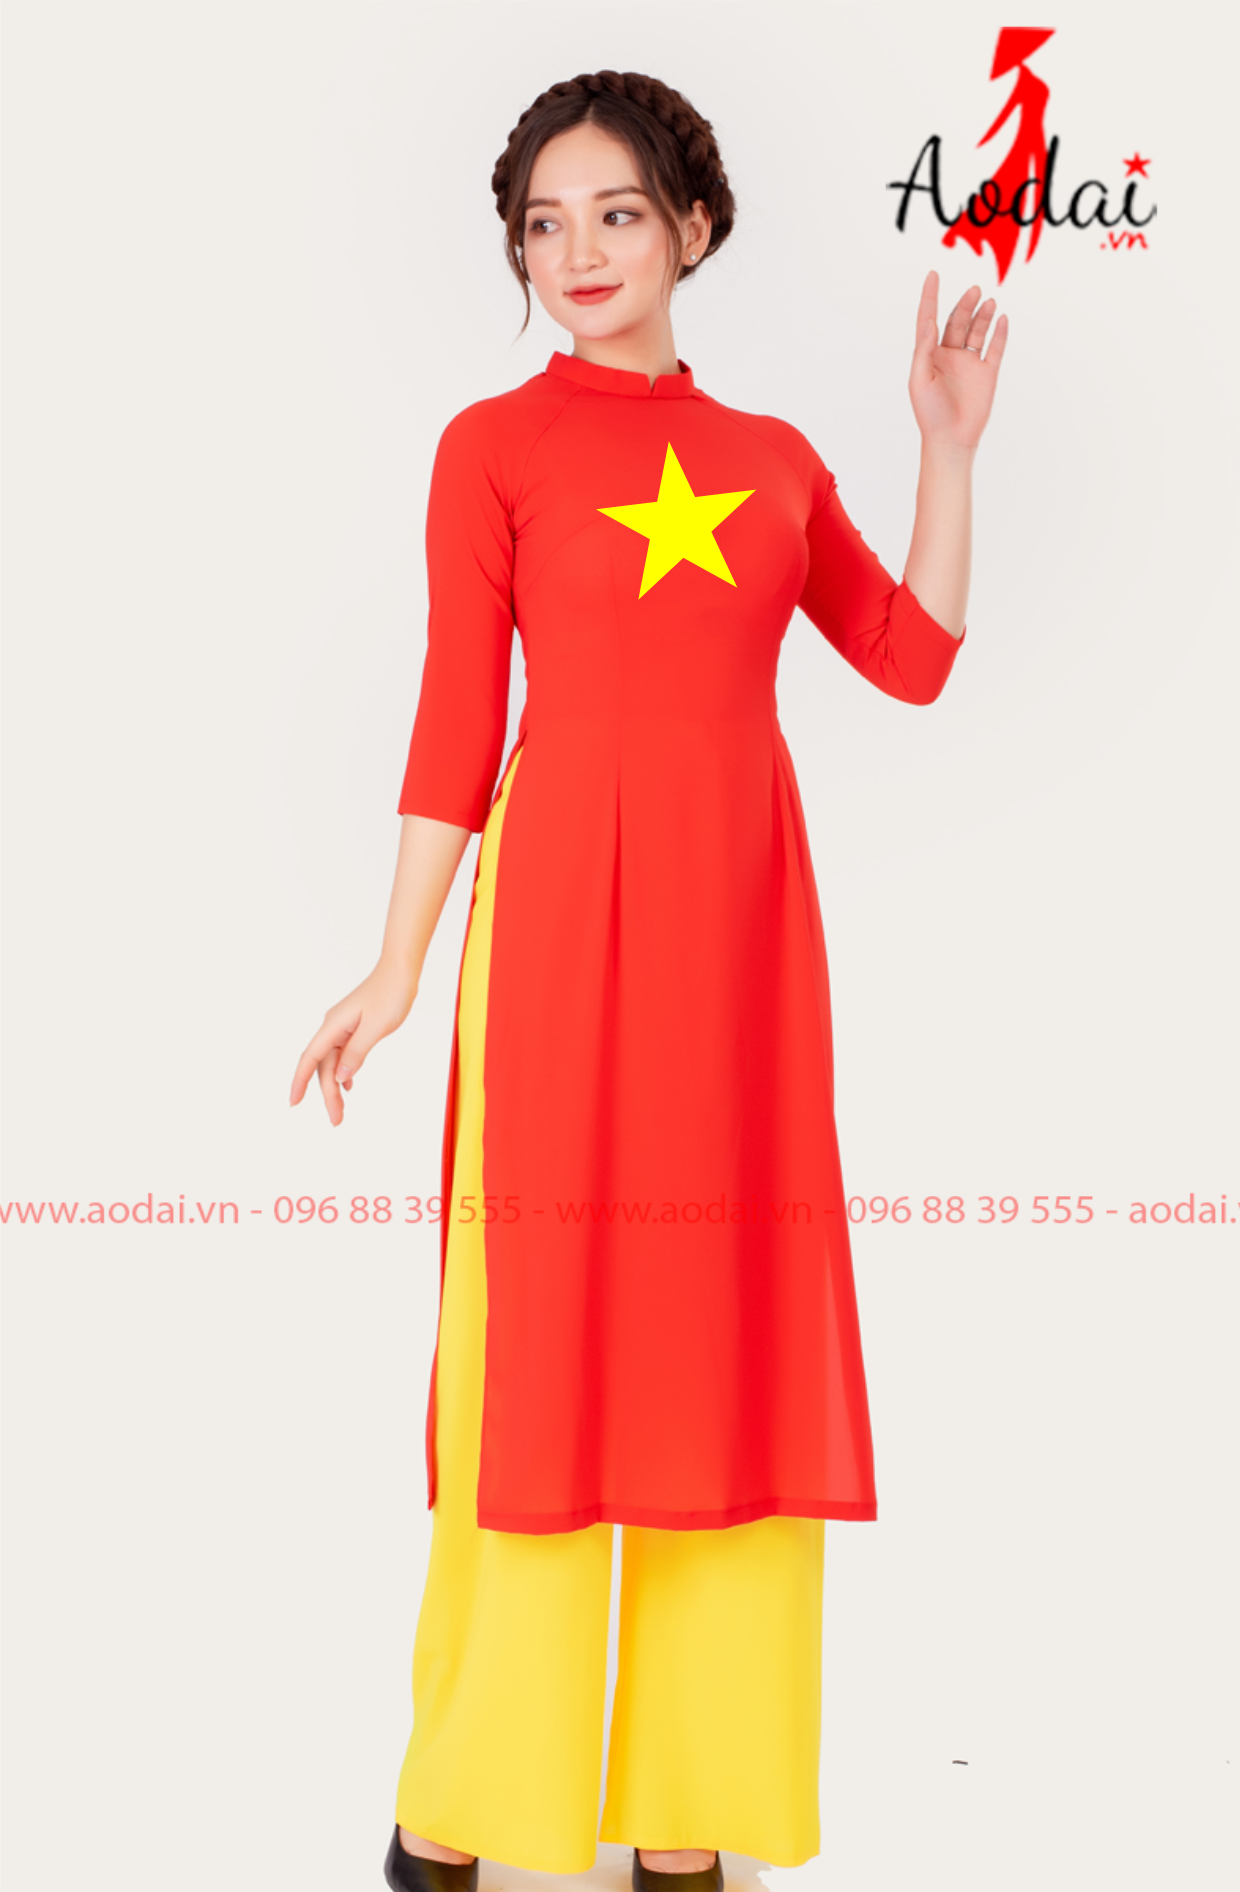 Áo dài cờ đỏ sao vàng - biểu tượng của nét duyên dáng quyến rũ truyền thống Việt Nam được tái hiện với nhiều kiểu dáng sáng tạo, phù hợp với mọi lứa tuổi và vóc dáng. Hãy cùng trải nghiệm nhé!